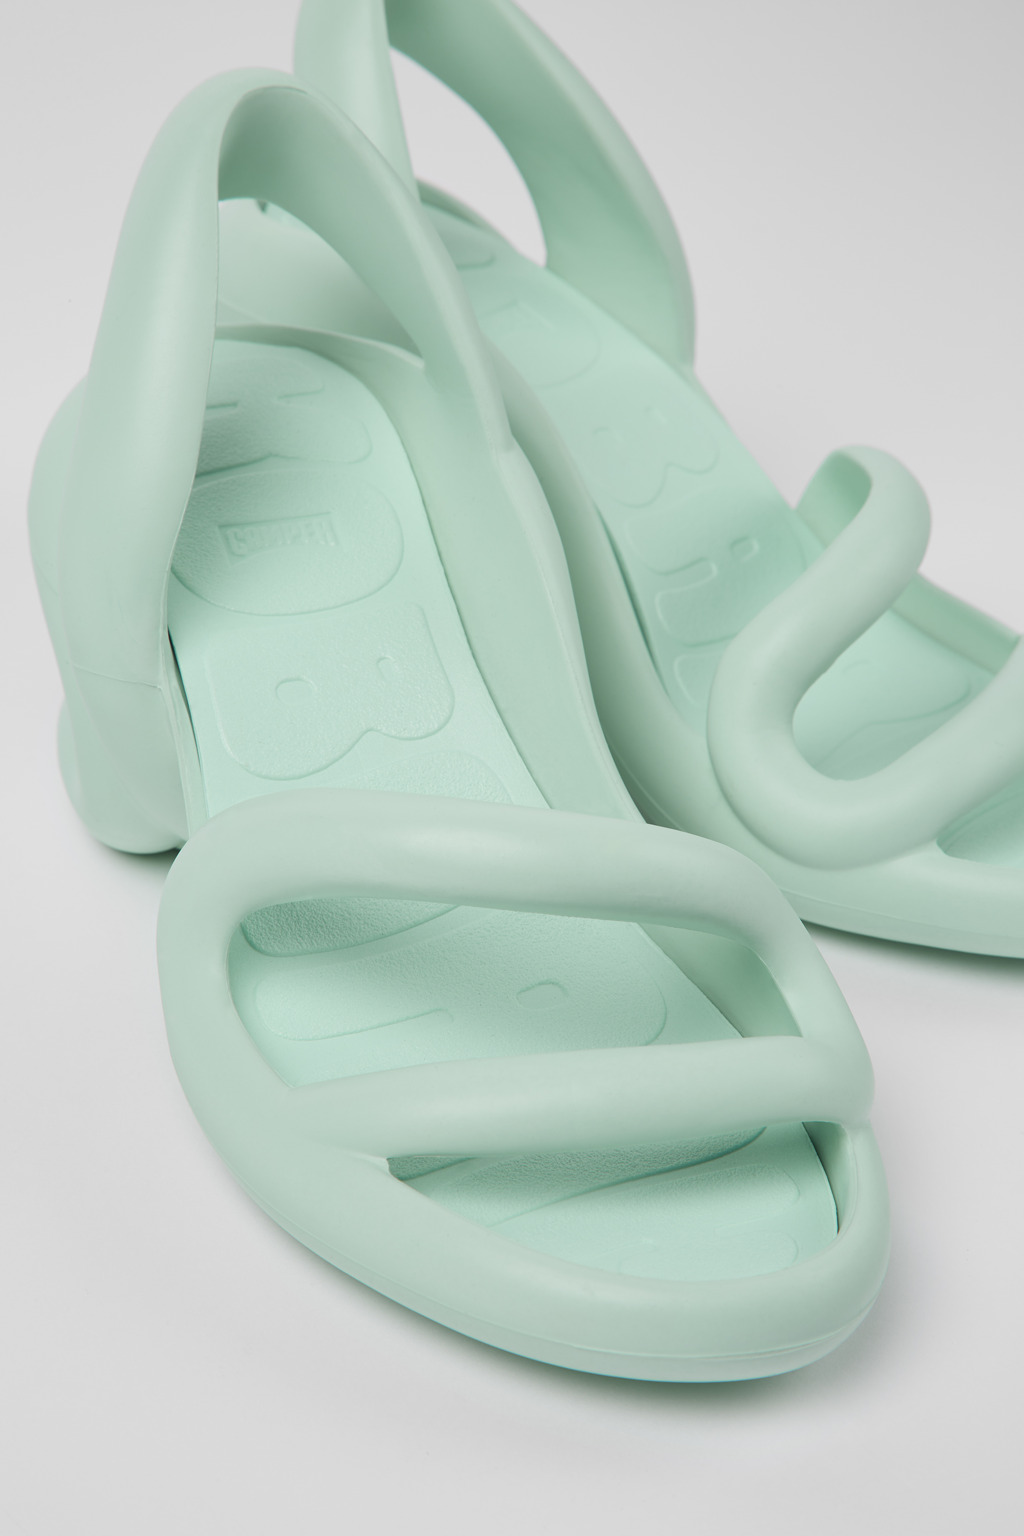 KOBARAH Blue Sandals for Women - Camper Shoes